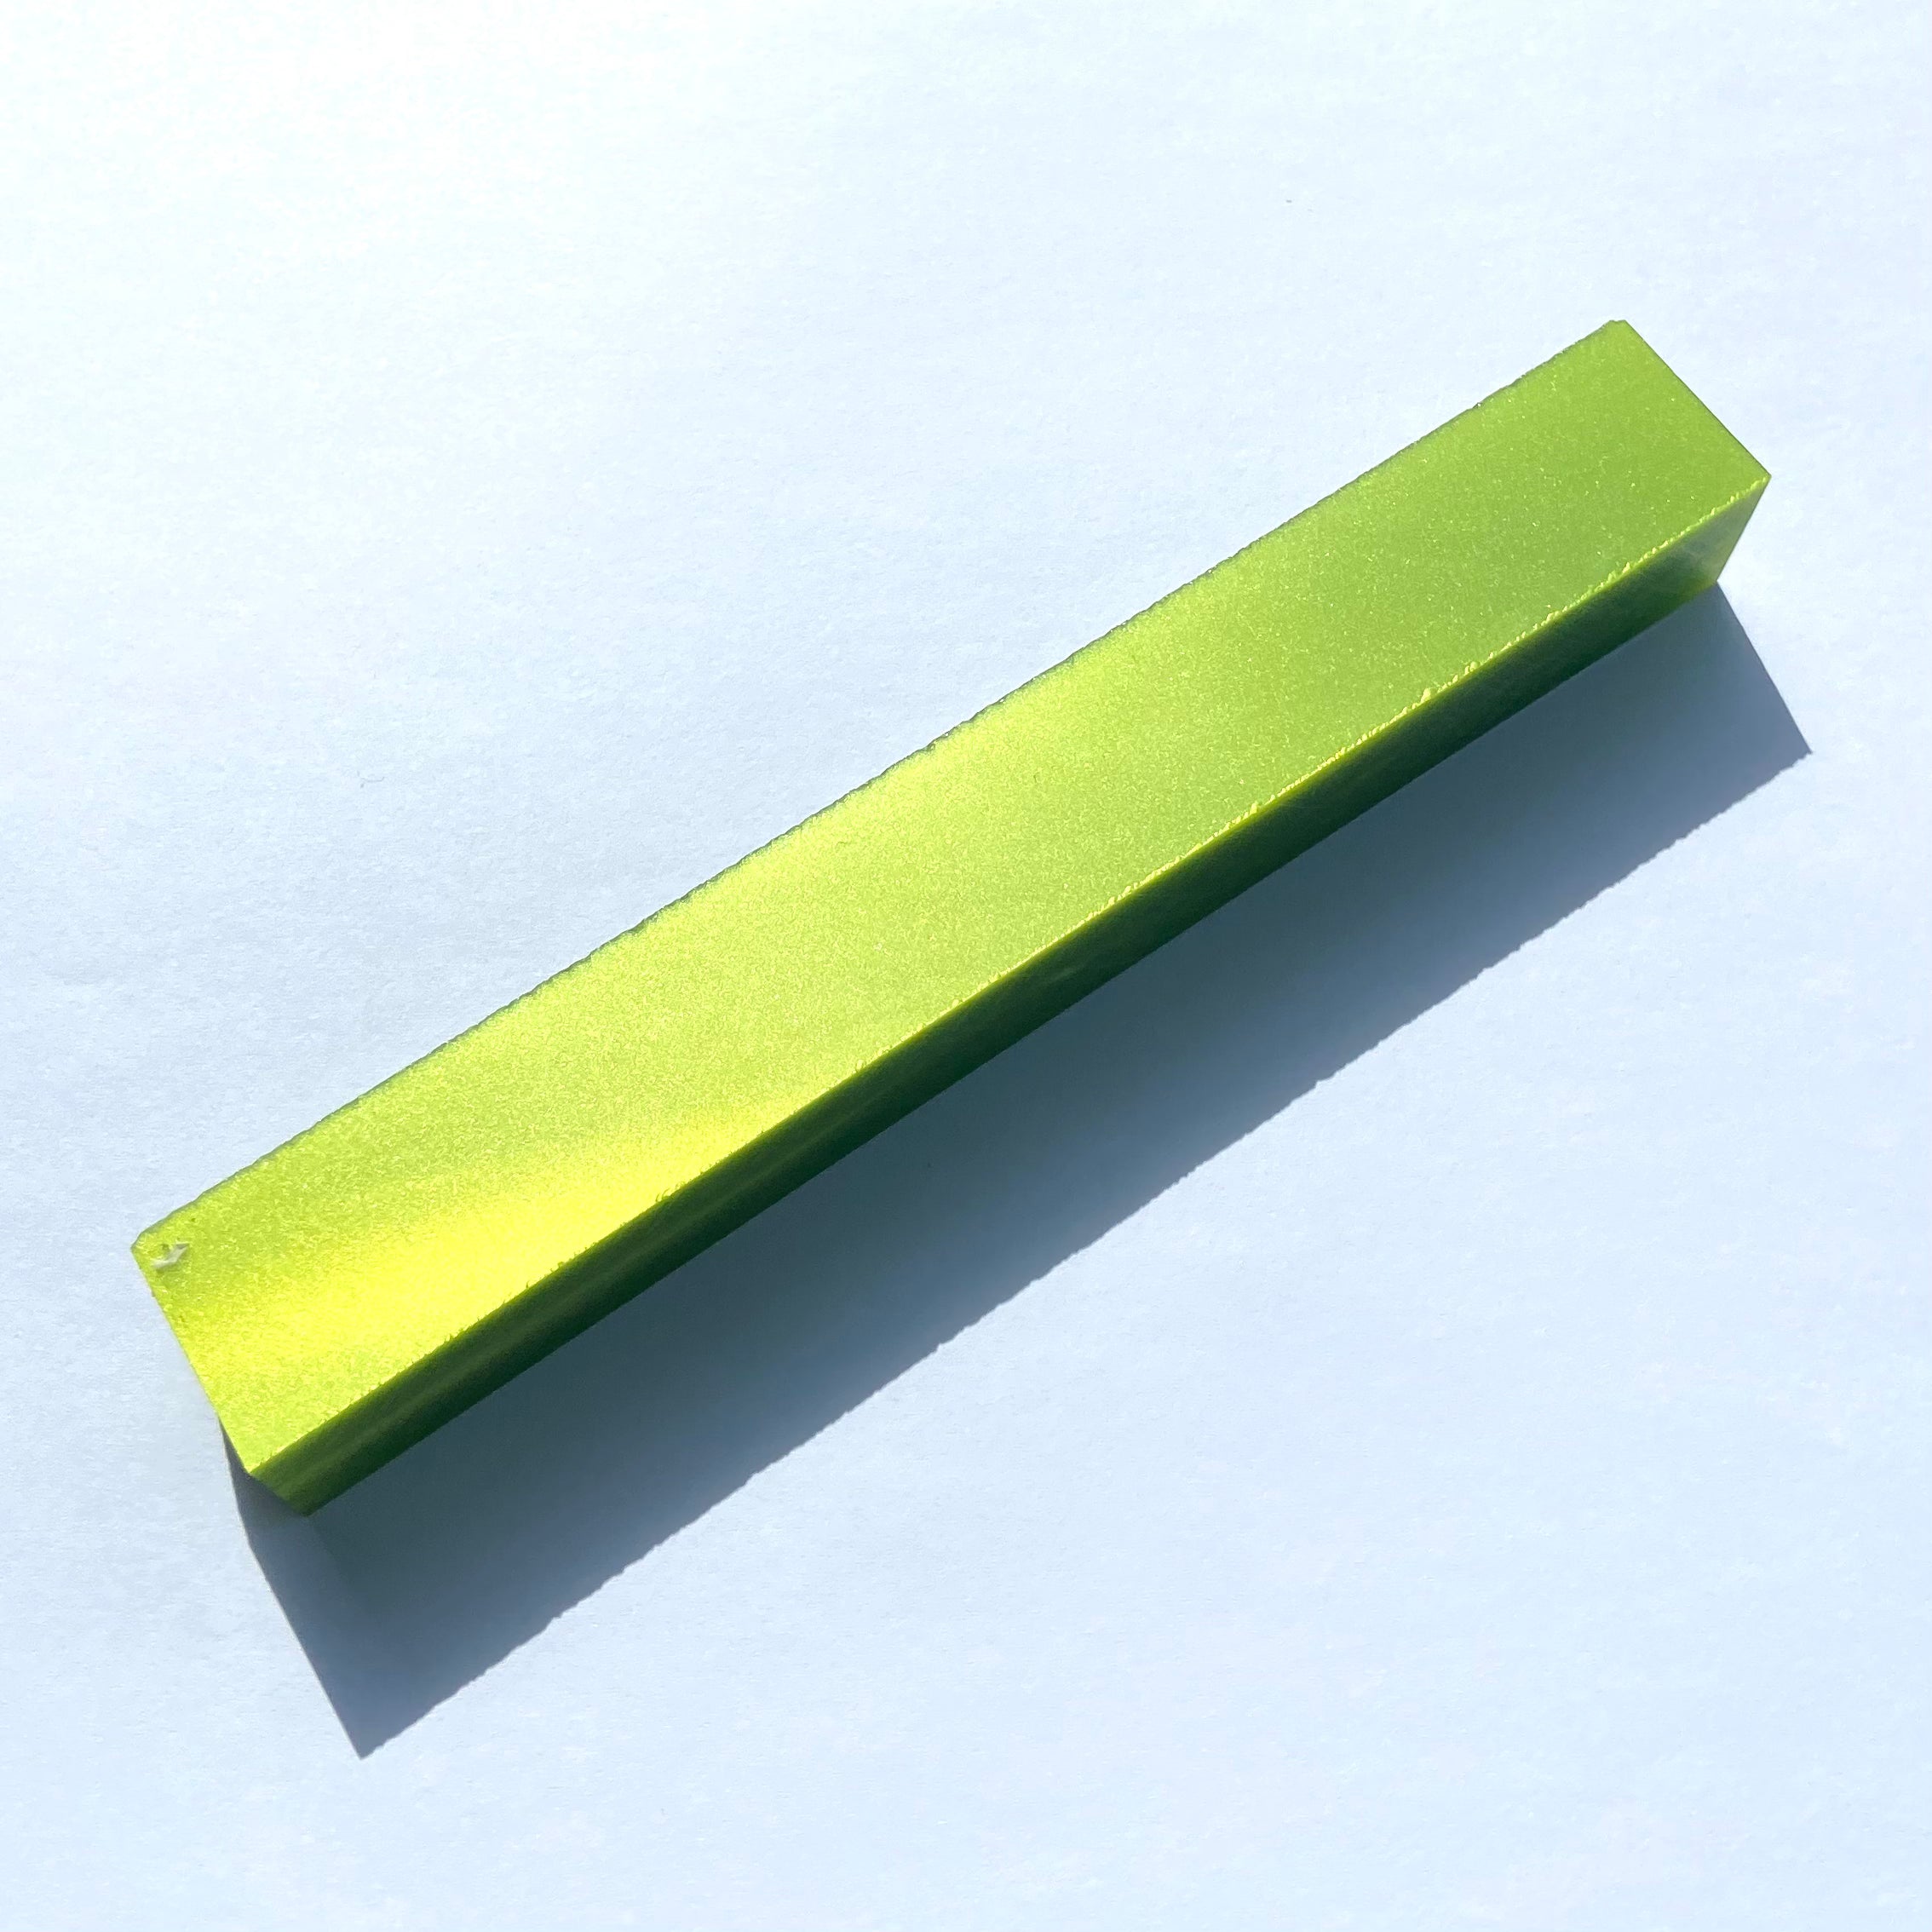 Toxic Green Pearl l Kirinite Pen Blank Pearl Series